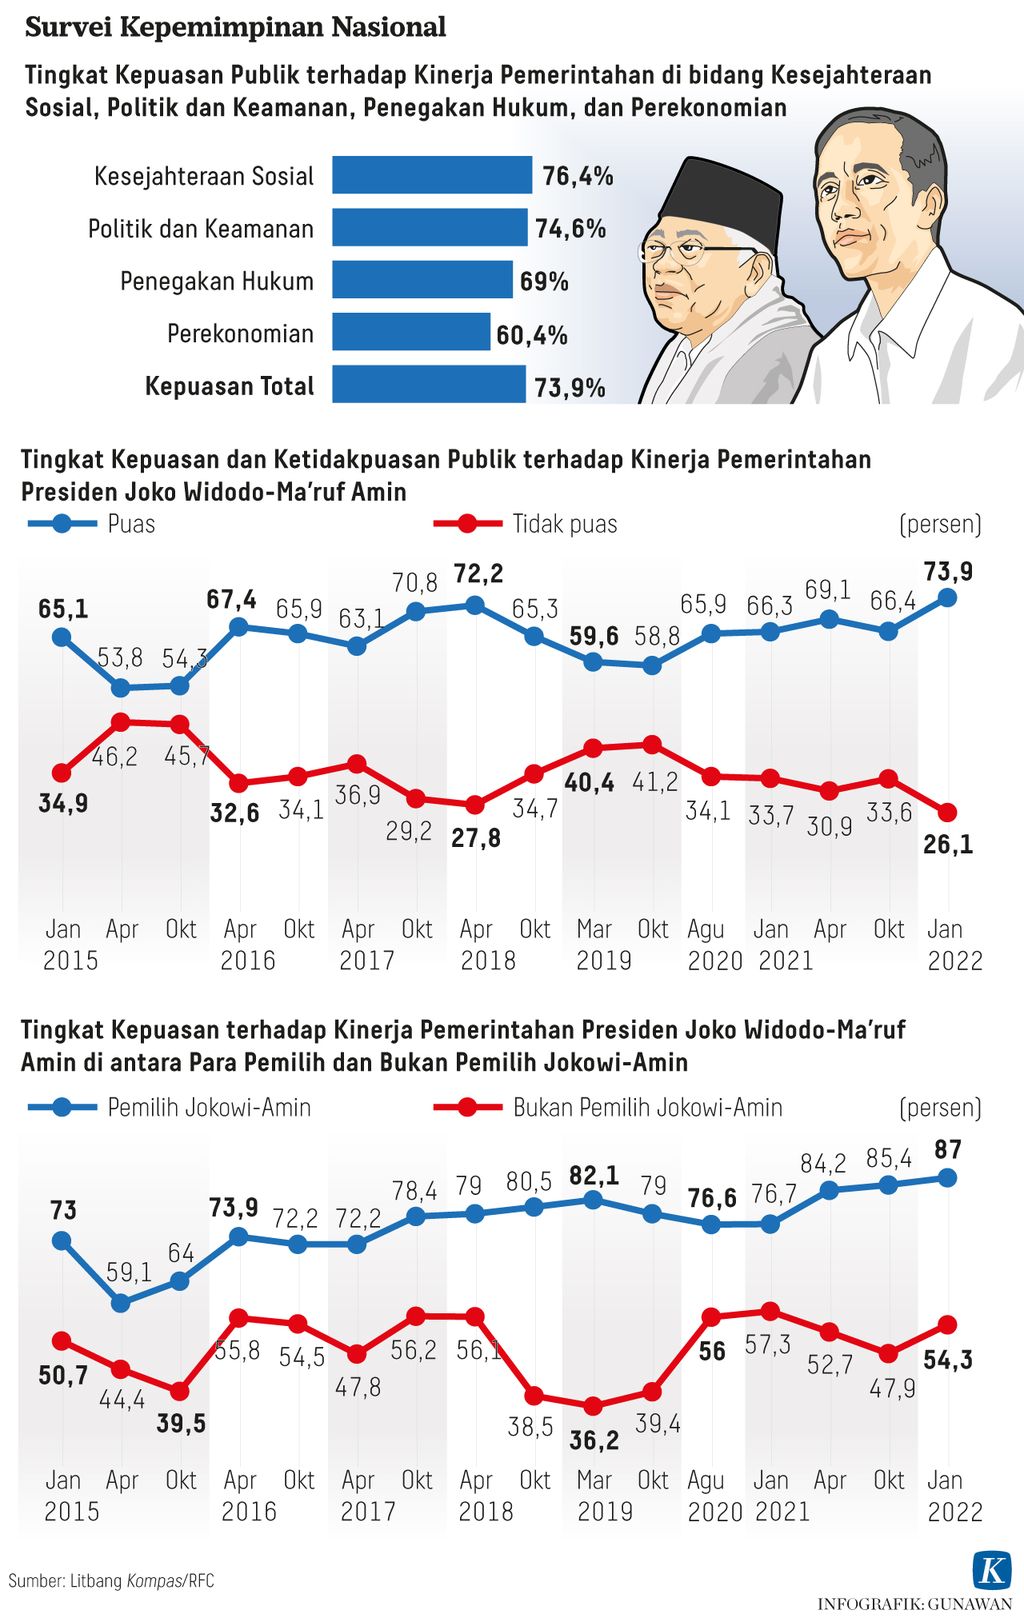 Infografik Survei Kepemimpinan Nasional